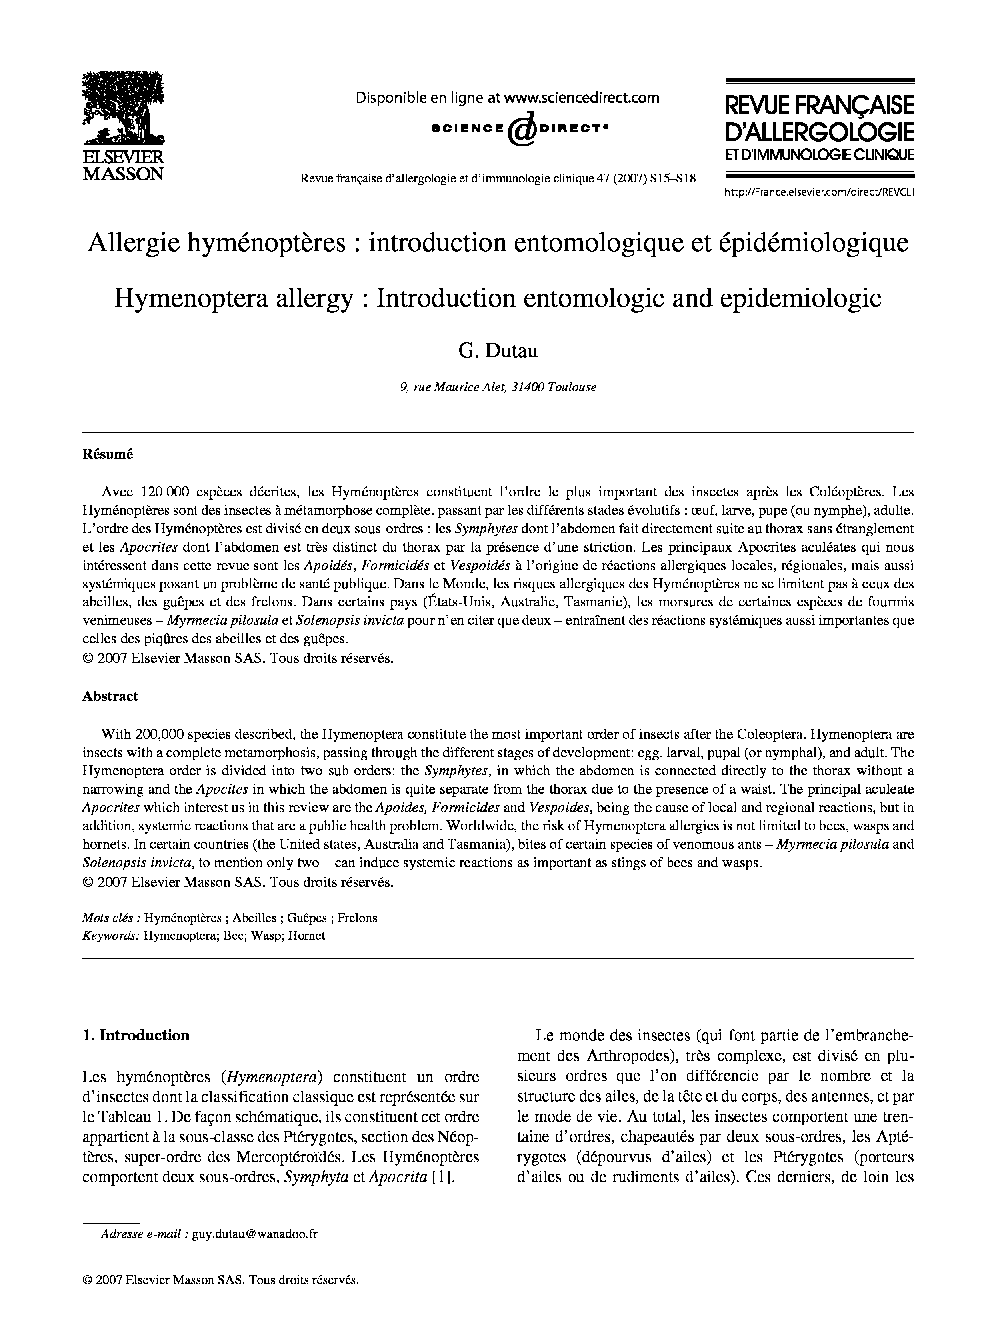 Allergie hyménoptères: introduction entomologique et épidémiologique